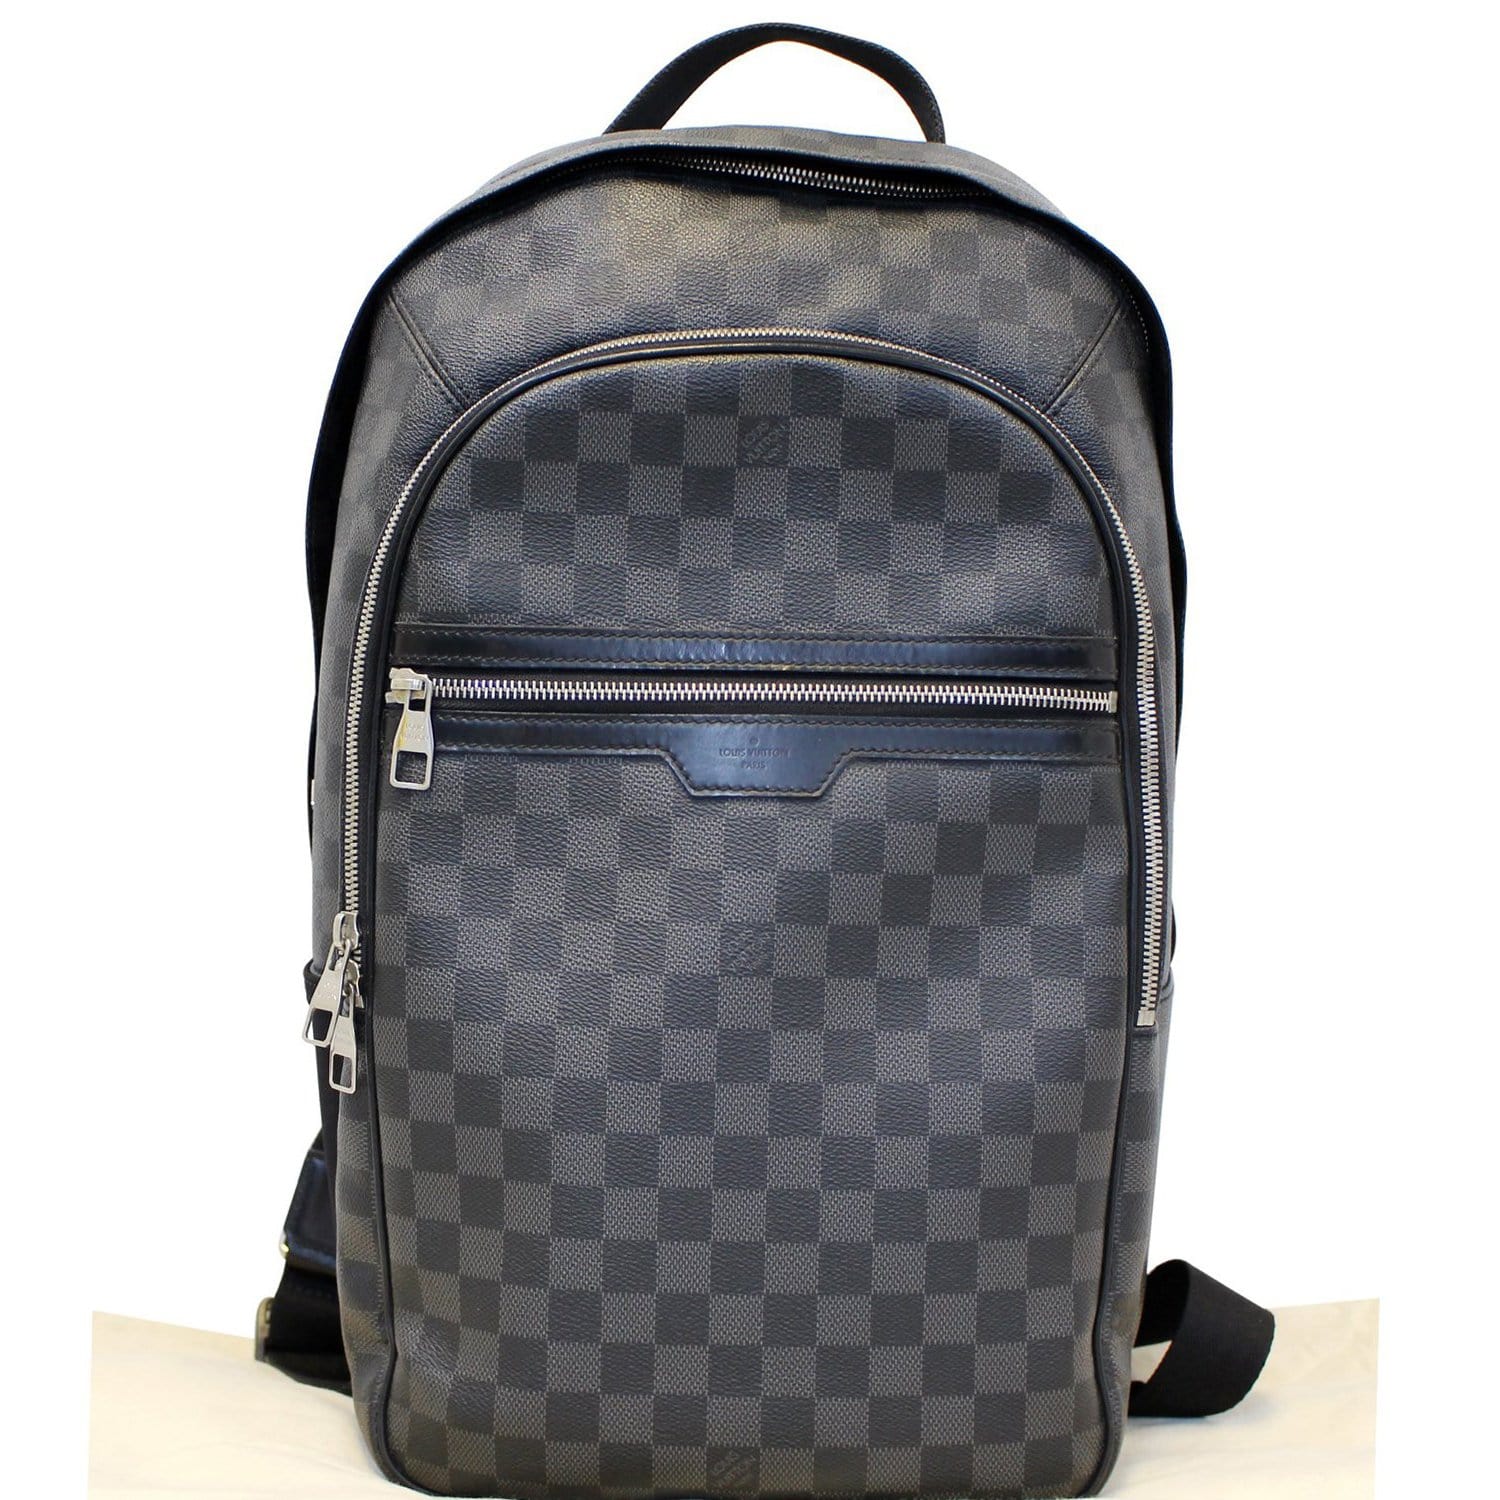 Louis Vuitton Michael Backpack Black Canvas Damier Graphite 100% Authentic